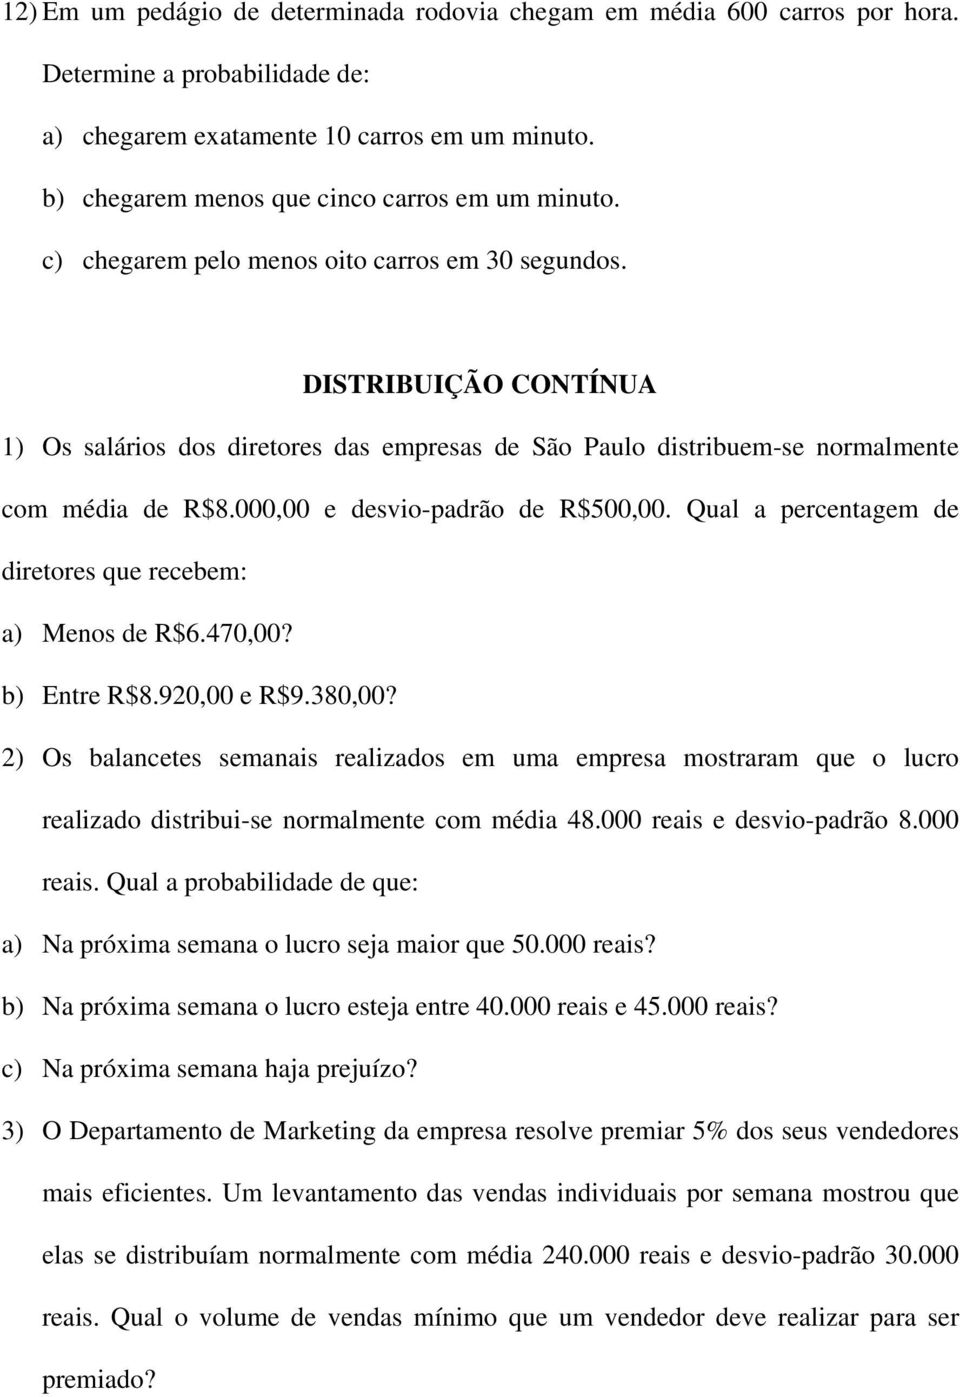 DISTRIBUIÇÃO CONTÍNUA 1) Os salários dos diretores das empresas de São Paulo distribuem-se normalmente com média de R$8.000,00 e desvio-padrão de R$500,00.